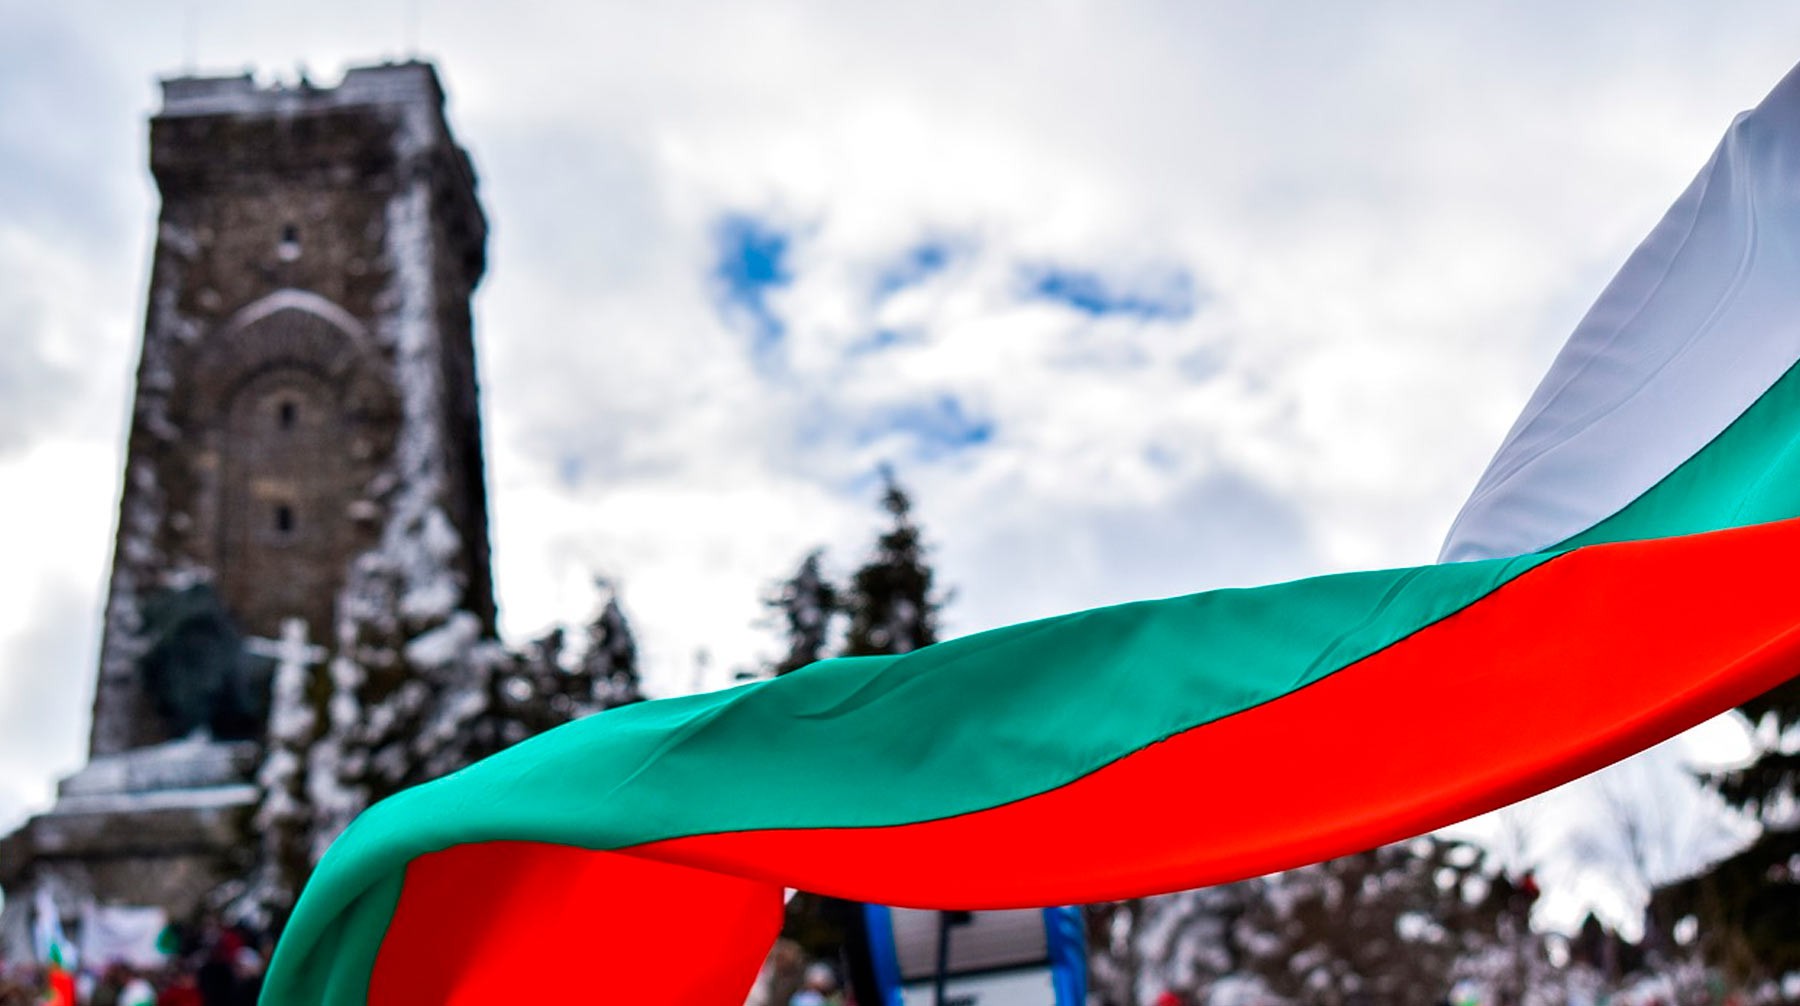 Dailystorm - Болгария высылает военного атташе России из-за подозрений в шпионаже